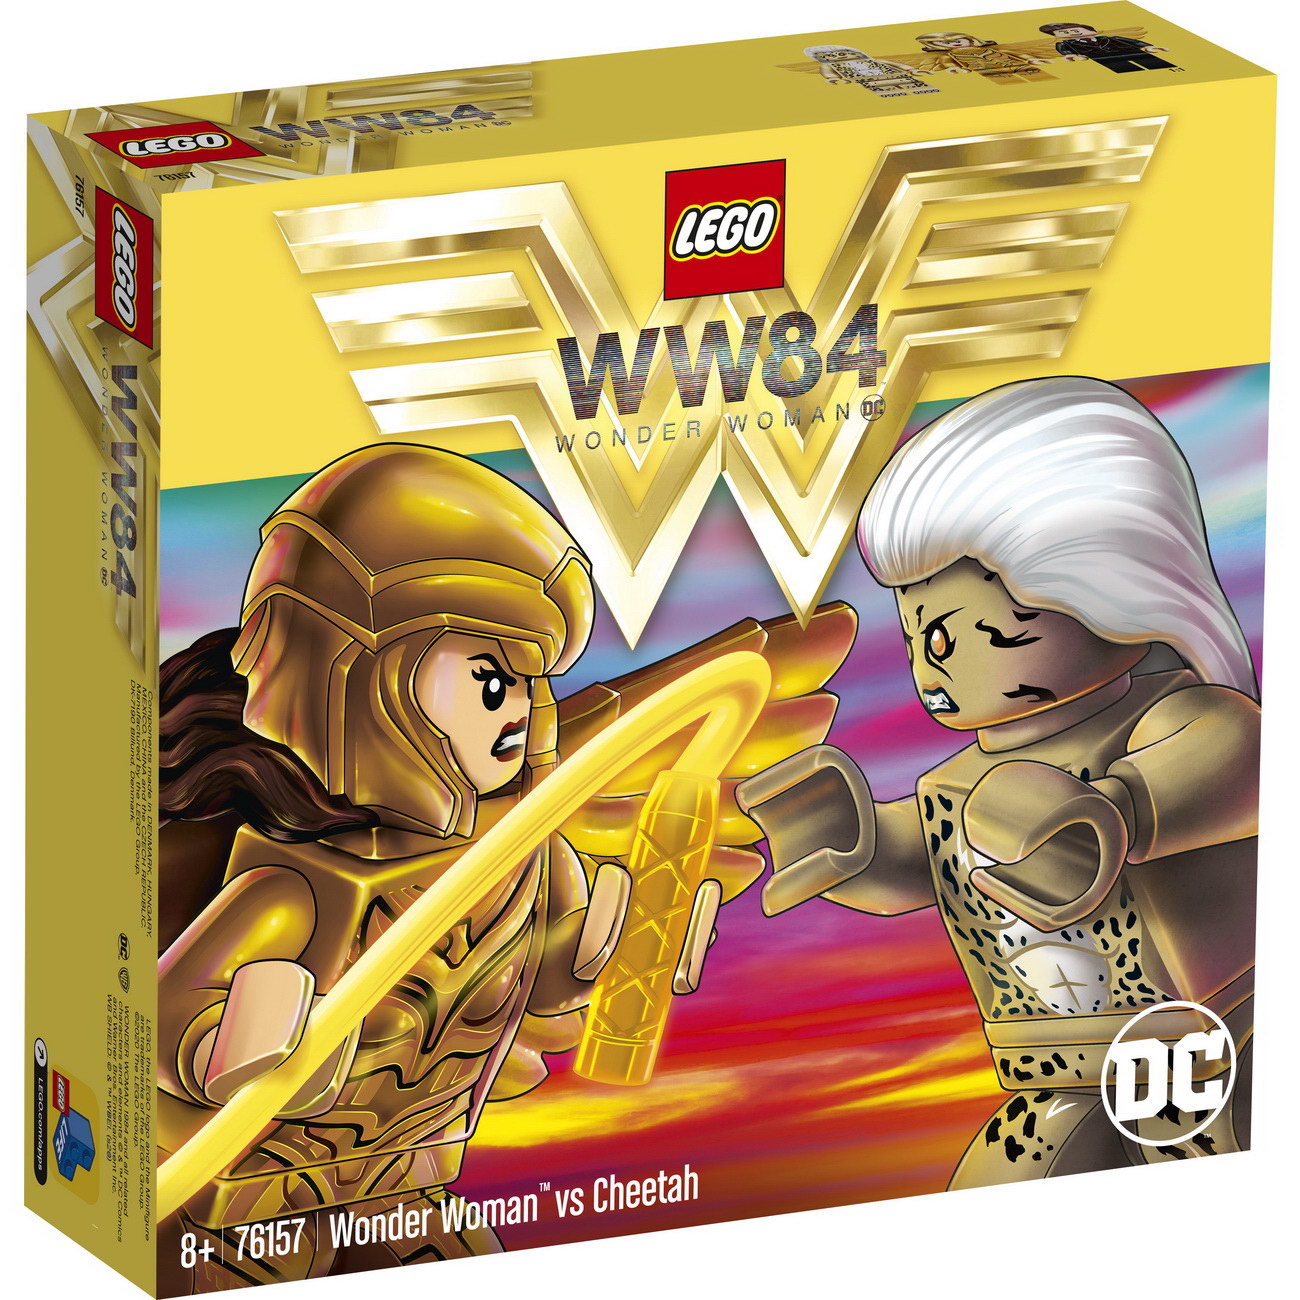 2020-06-LEGO DC Wonder Woman WW84 76157 - Wonder Woman vs Cheetah